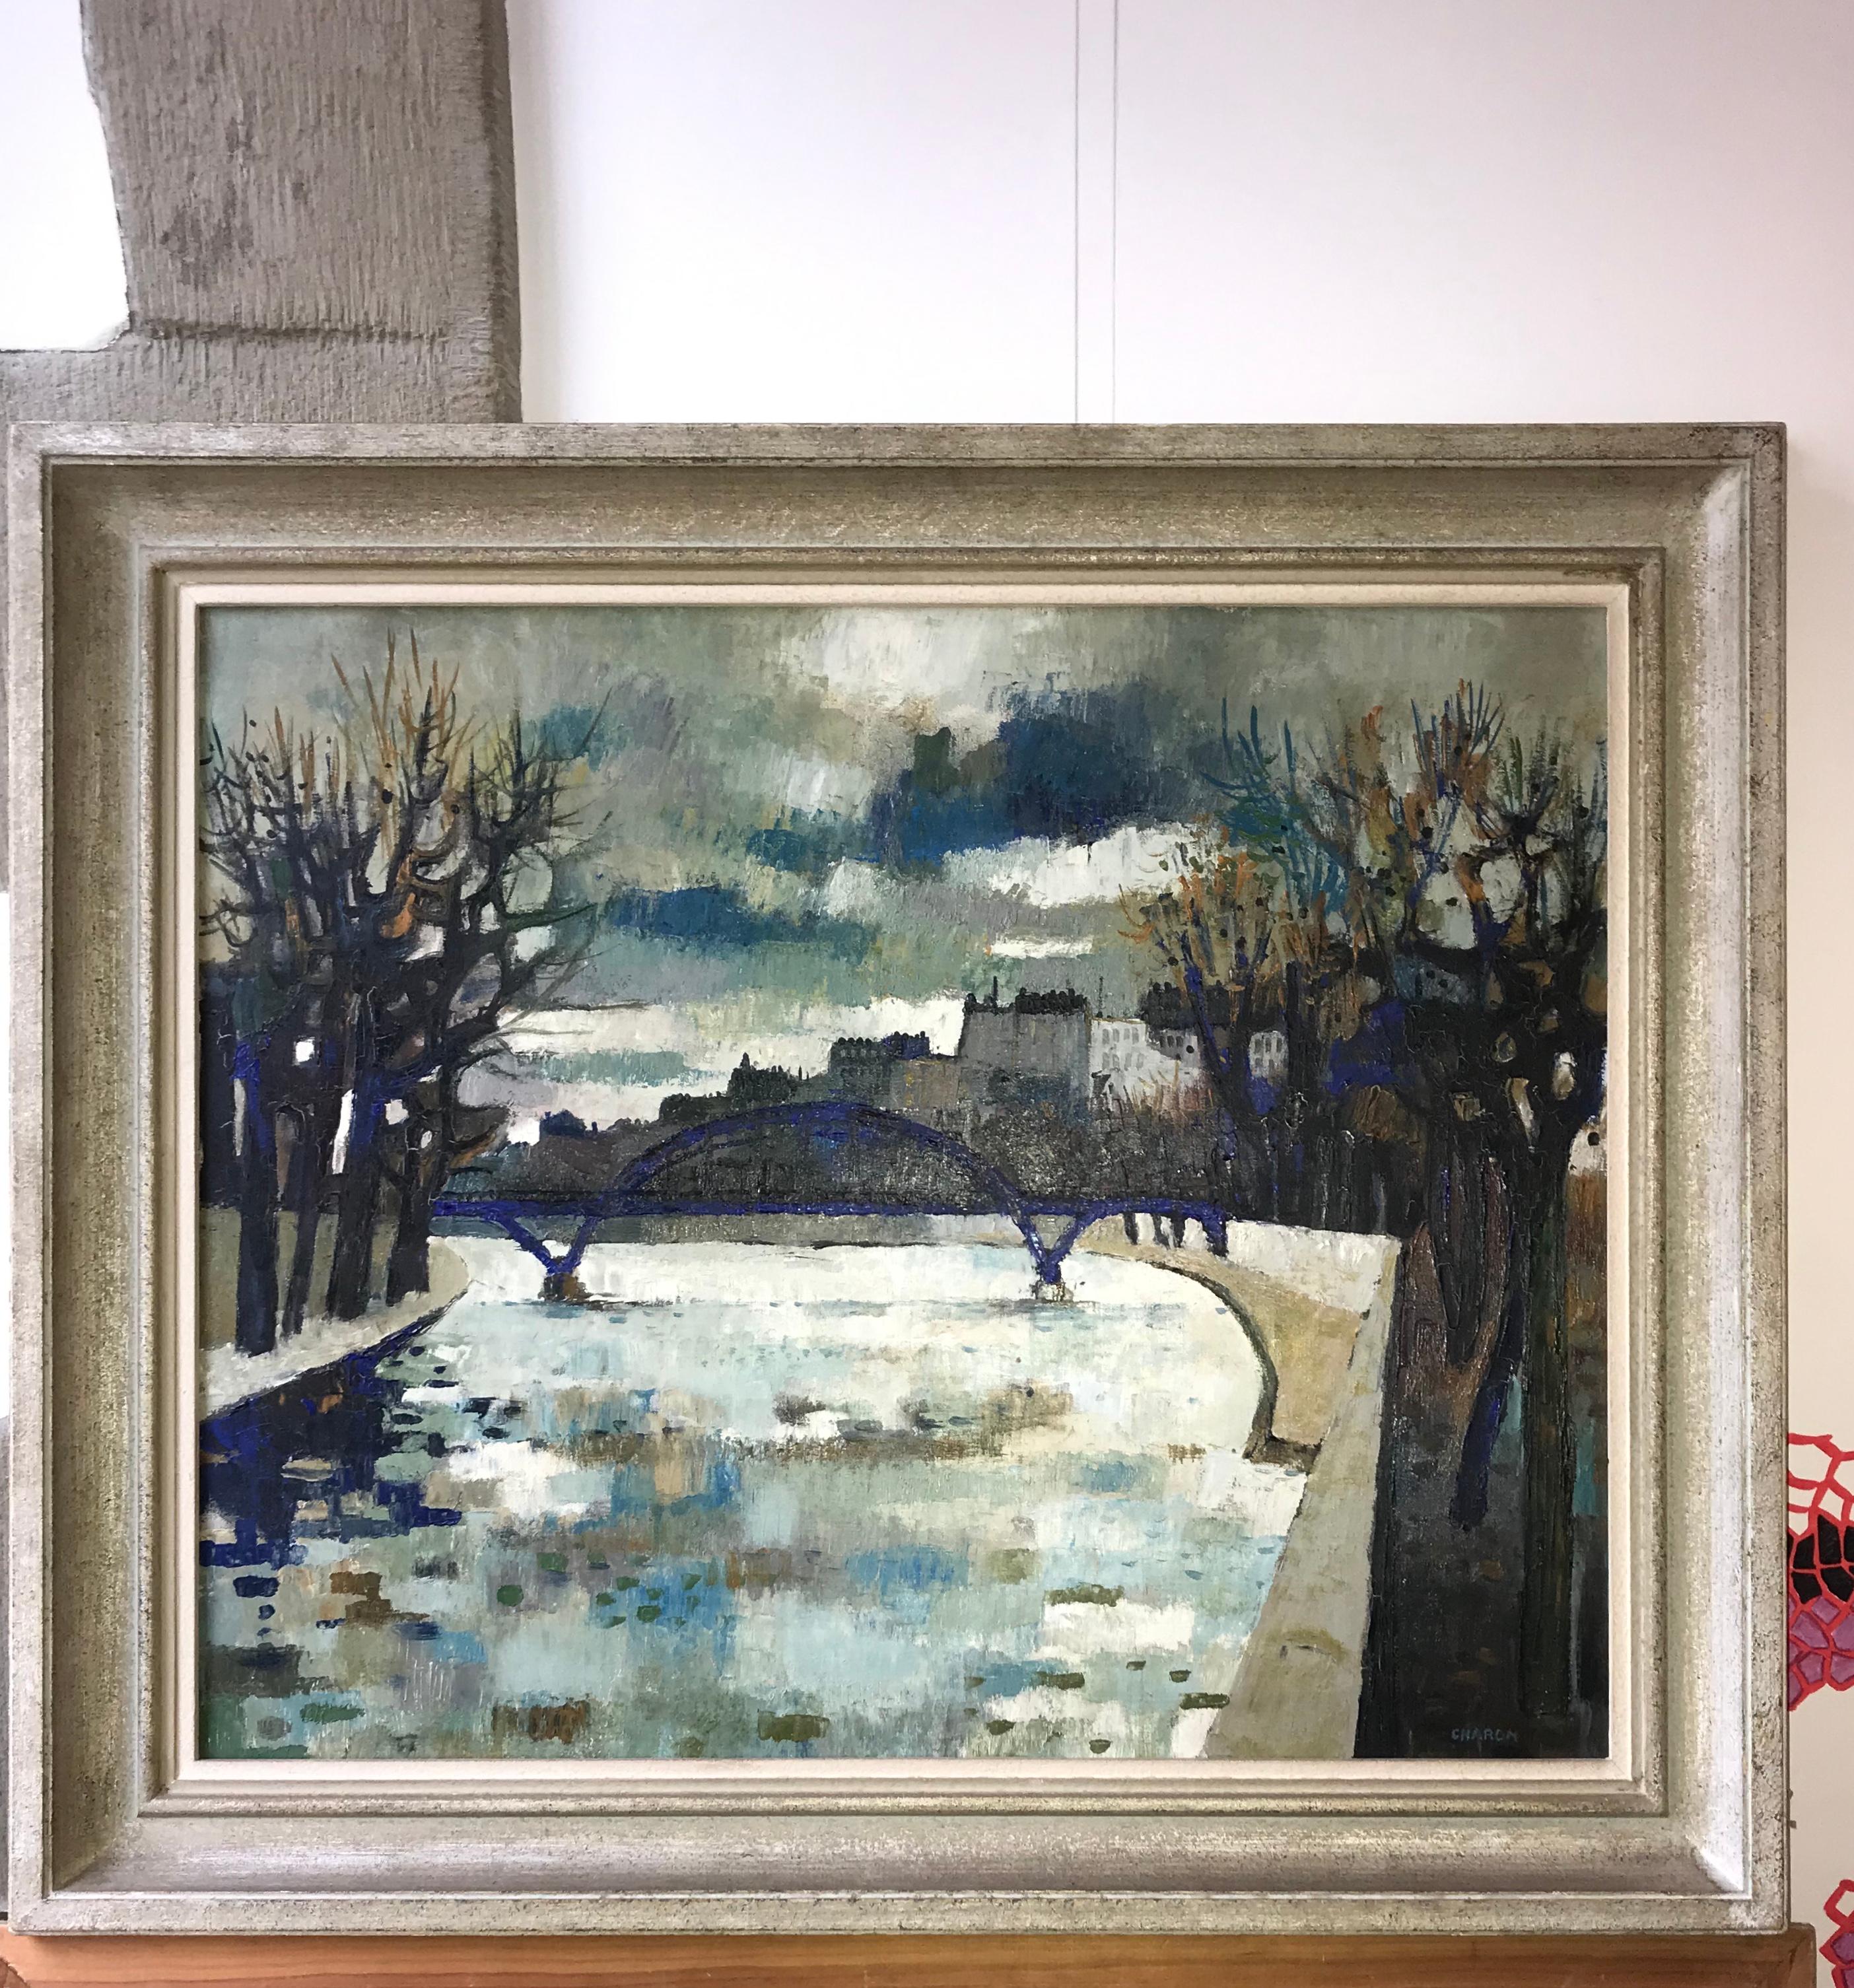 Seine River Bridge, Paris - Painting by Guy Charon